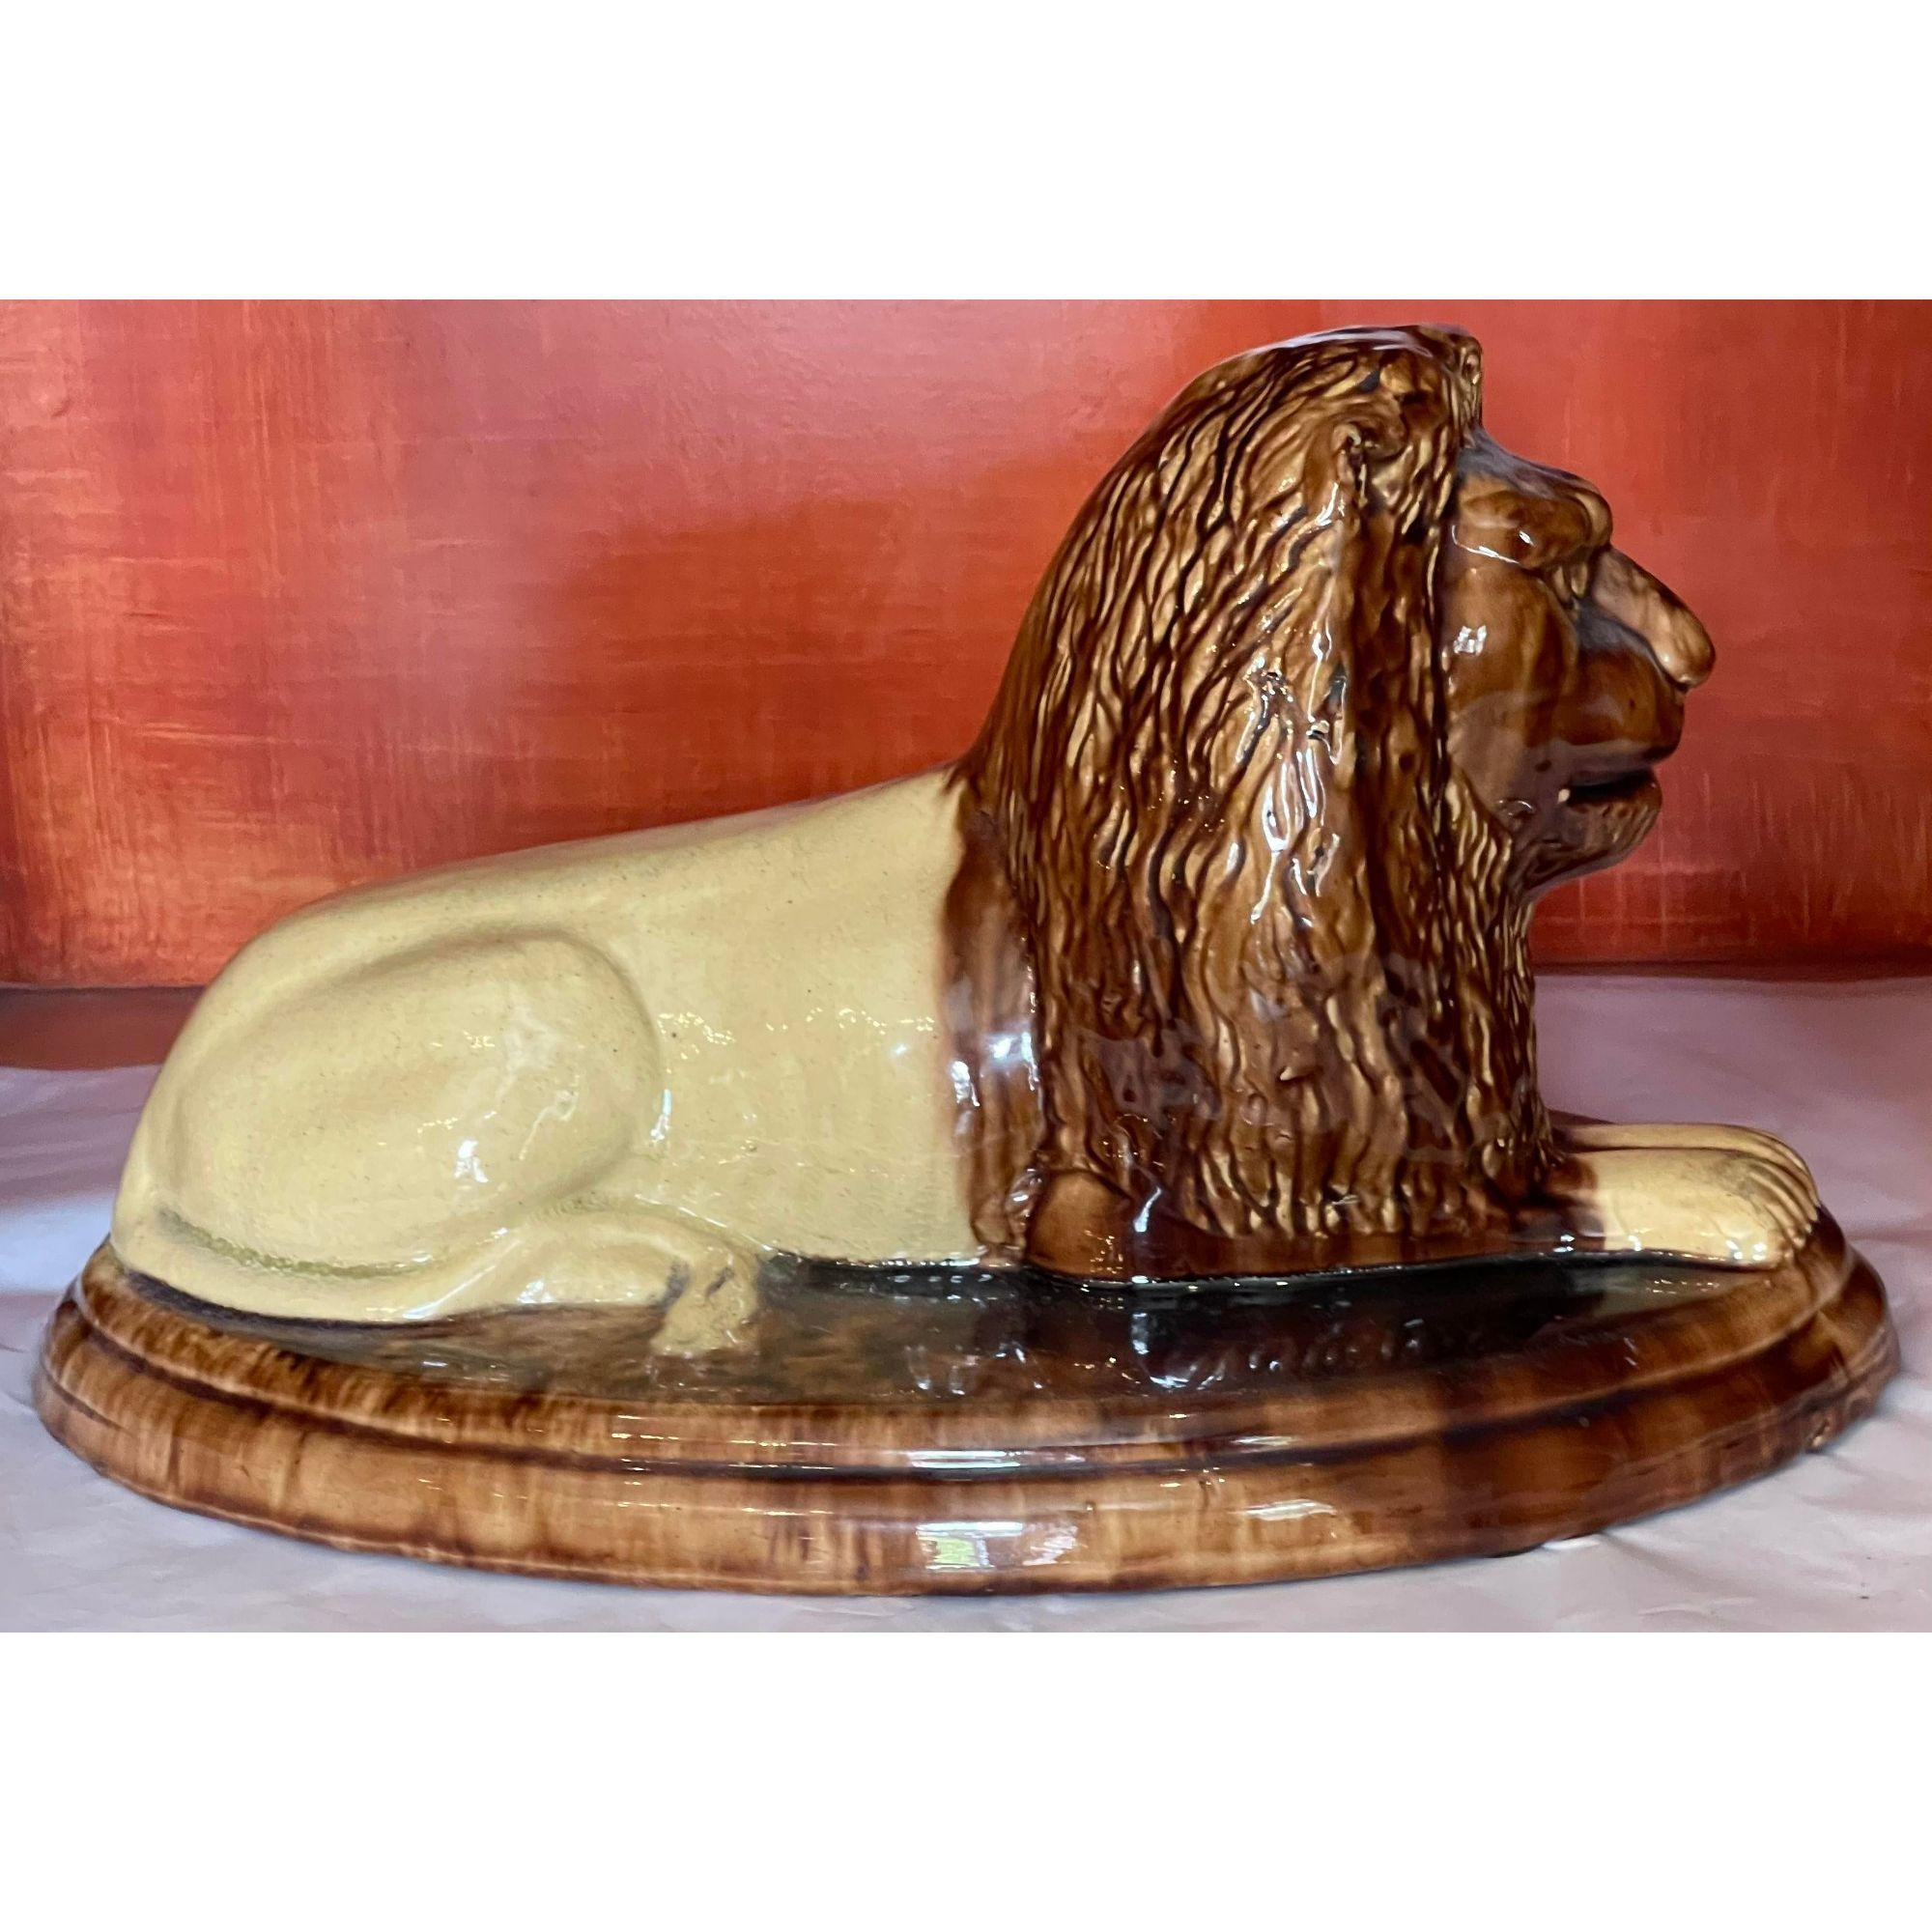 Sculpture ancienne de lion couché en faïence. Il s'agit d'une poterie majolique très inhabituelle, de superbe qualité, avec une glaçure brune et jaune. 

Informations complémentaires : 
Matériaux : Poterie
Couleur : marron
Période : 19ème